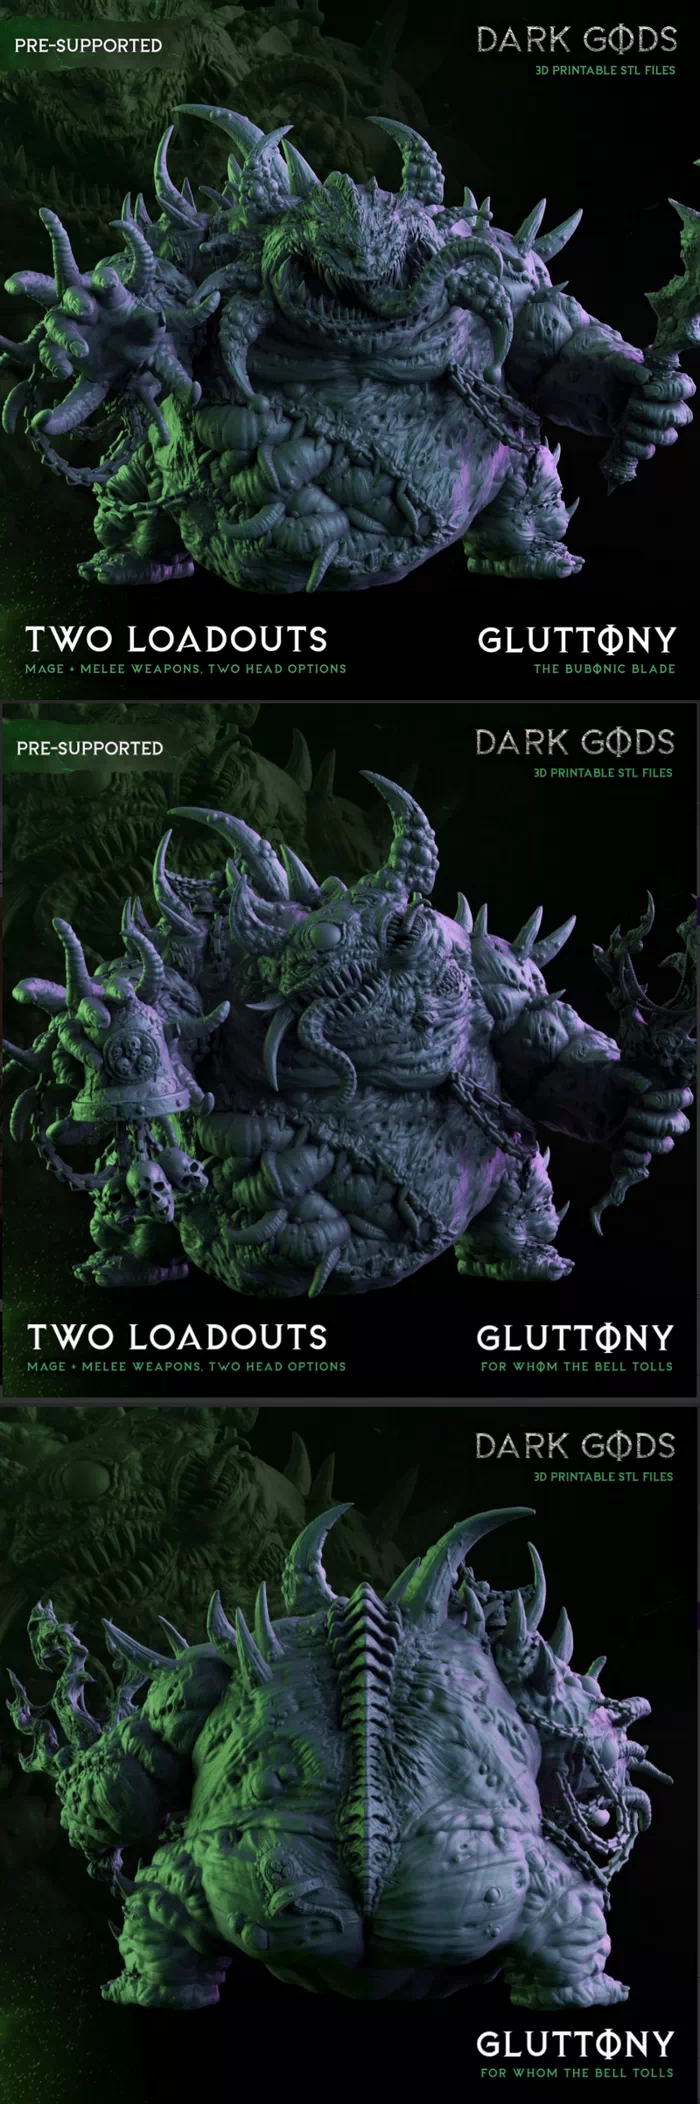 GLUTTONY THE BUBONIC ONE - Dark Gods